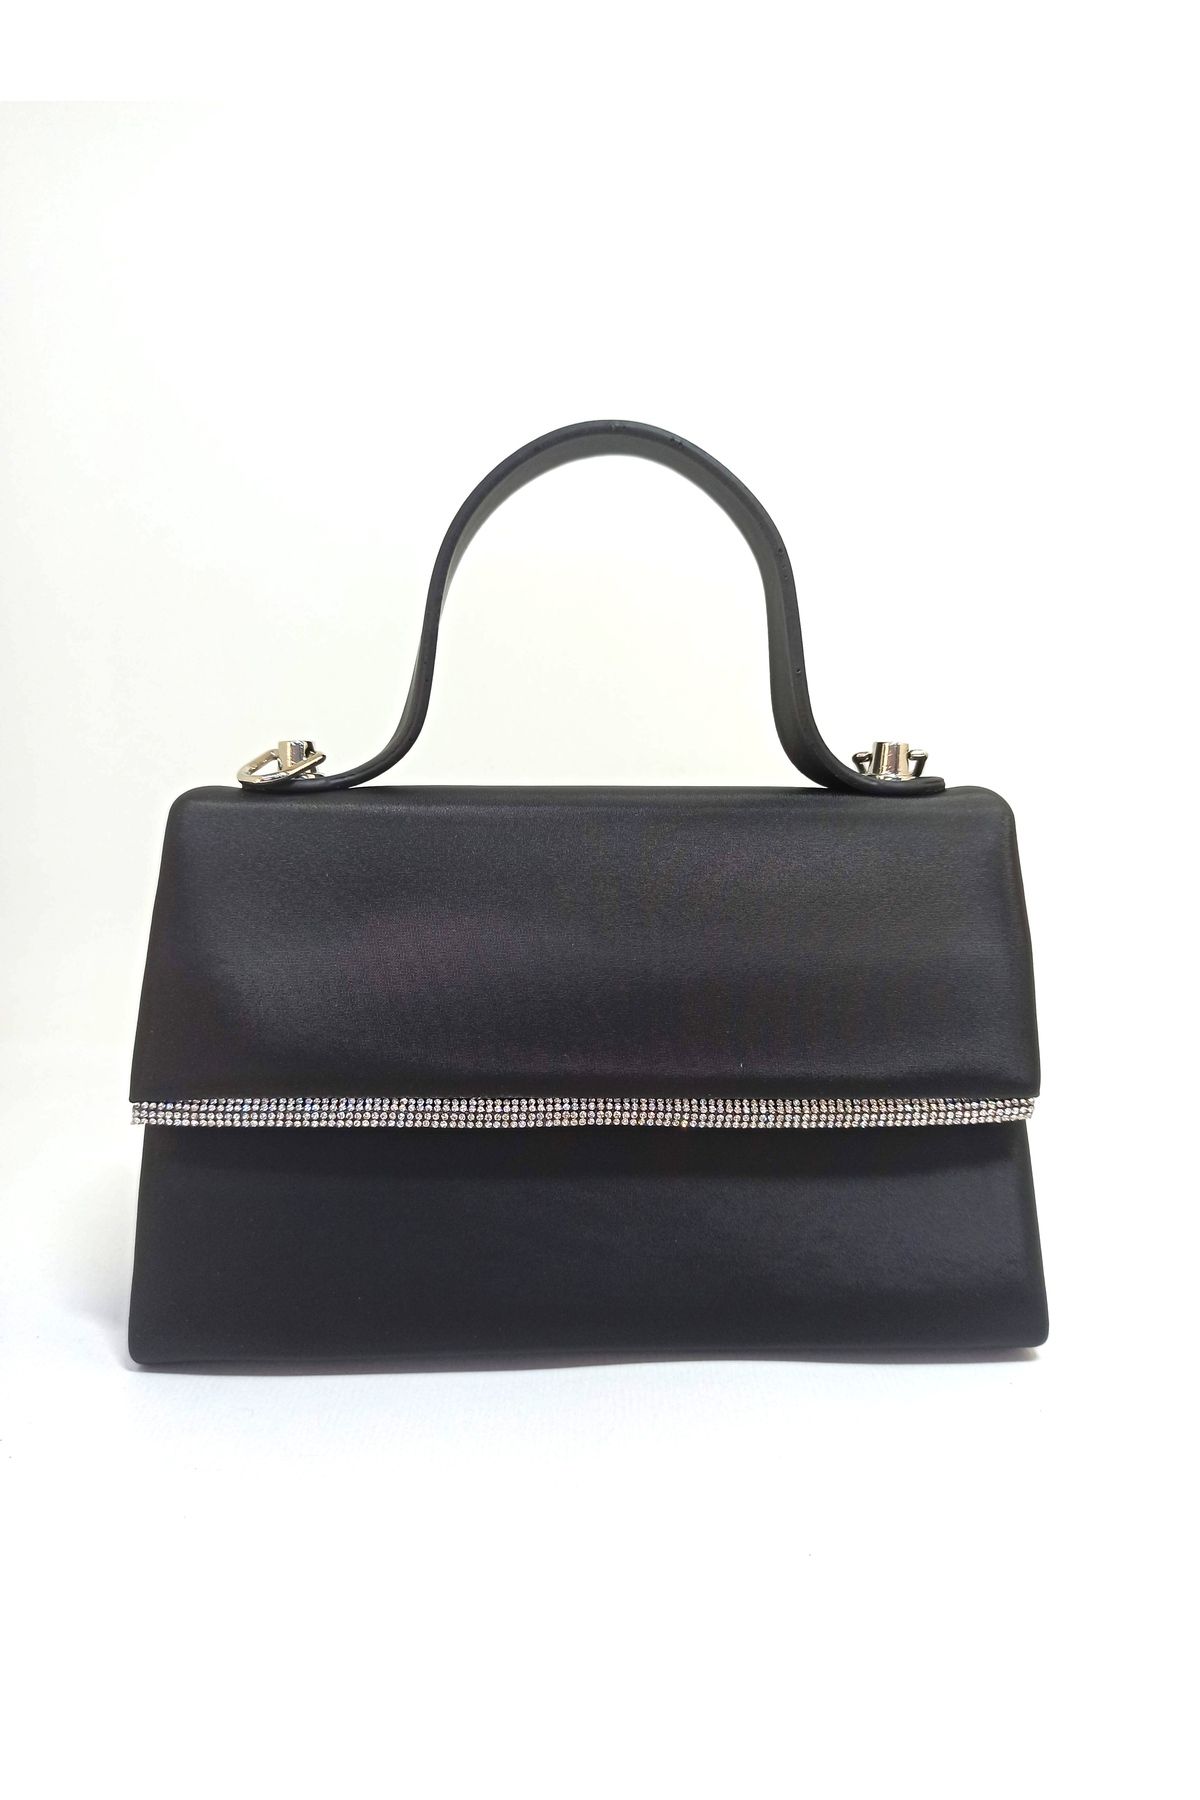 dizaynbag Kadın siyah saten kumaş gümüş taş aksesuarlı mini abiye çanta